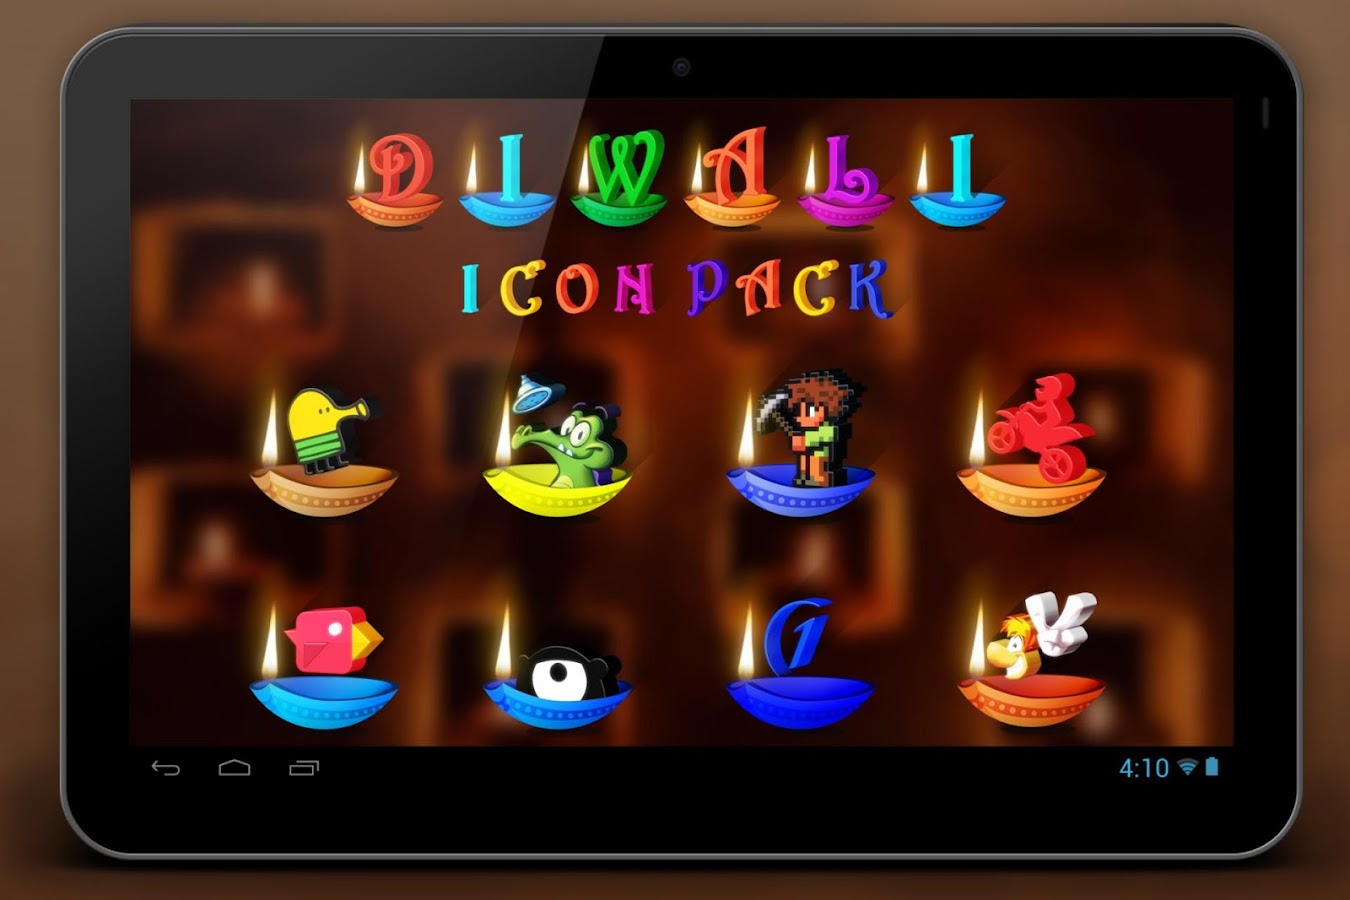    Diwali 2016 Icon Pack-Greeting- screenshot  